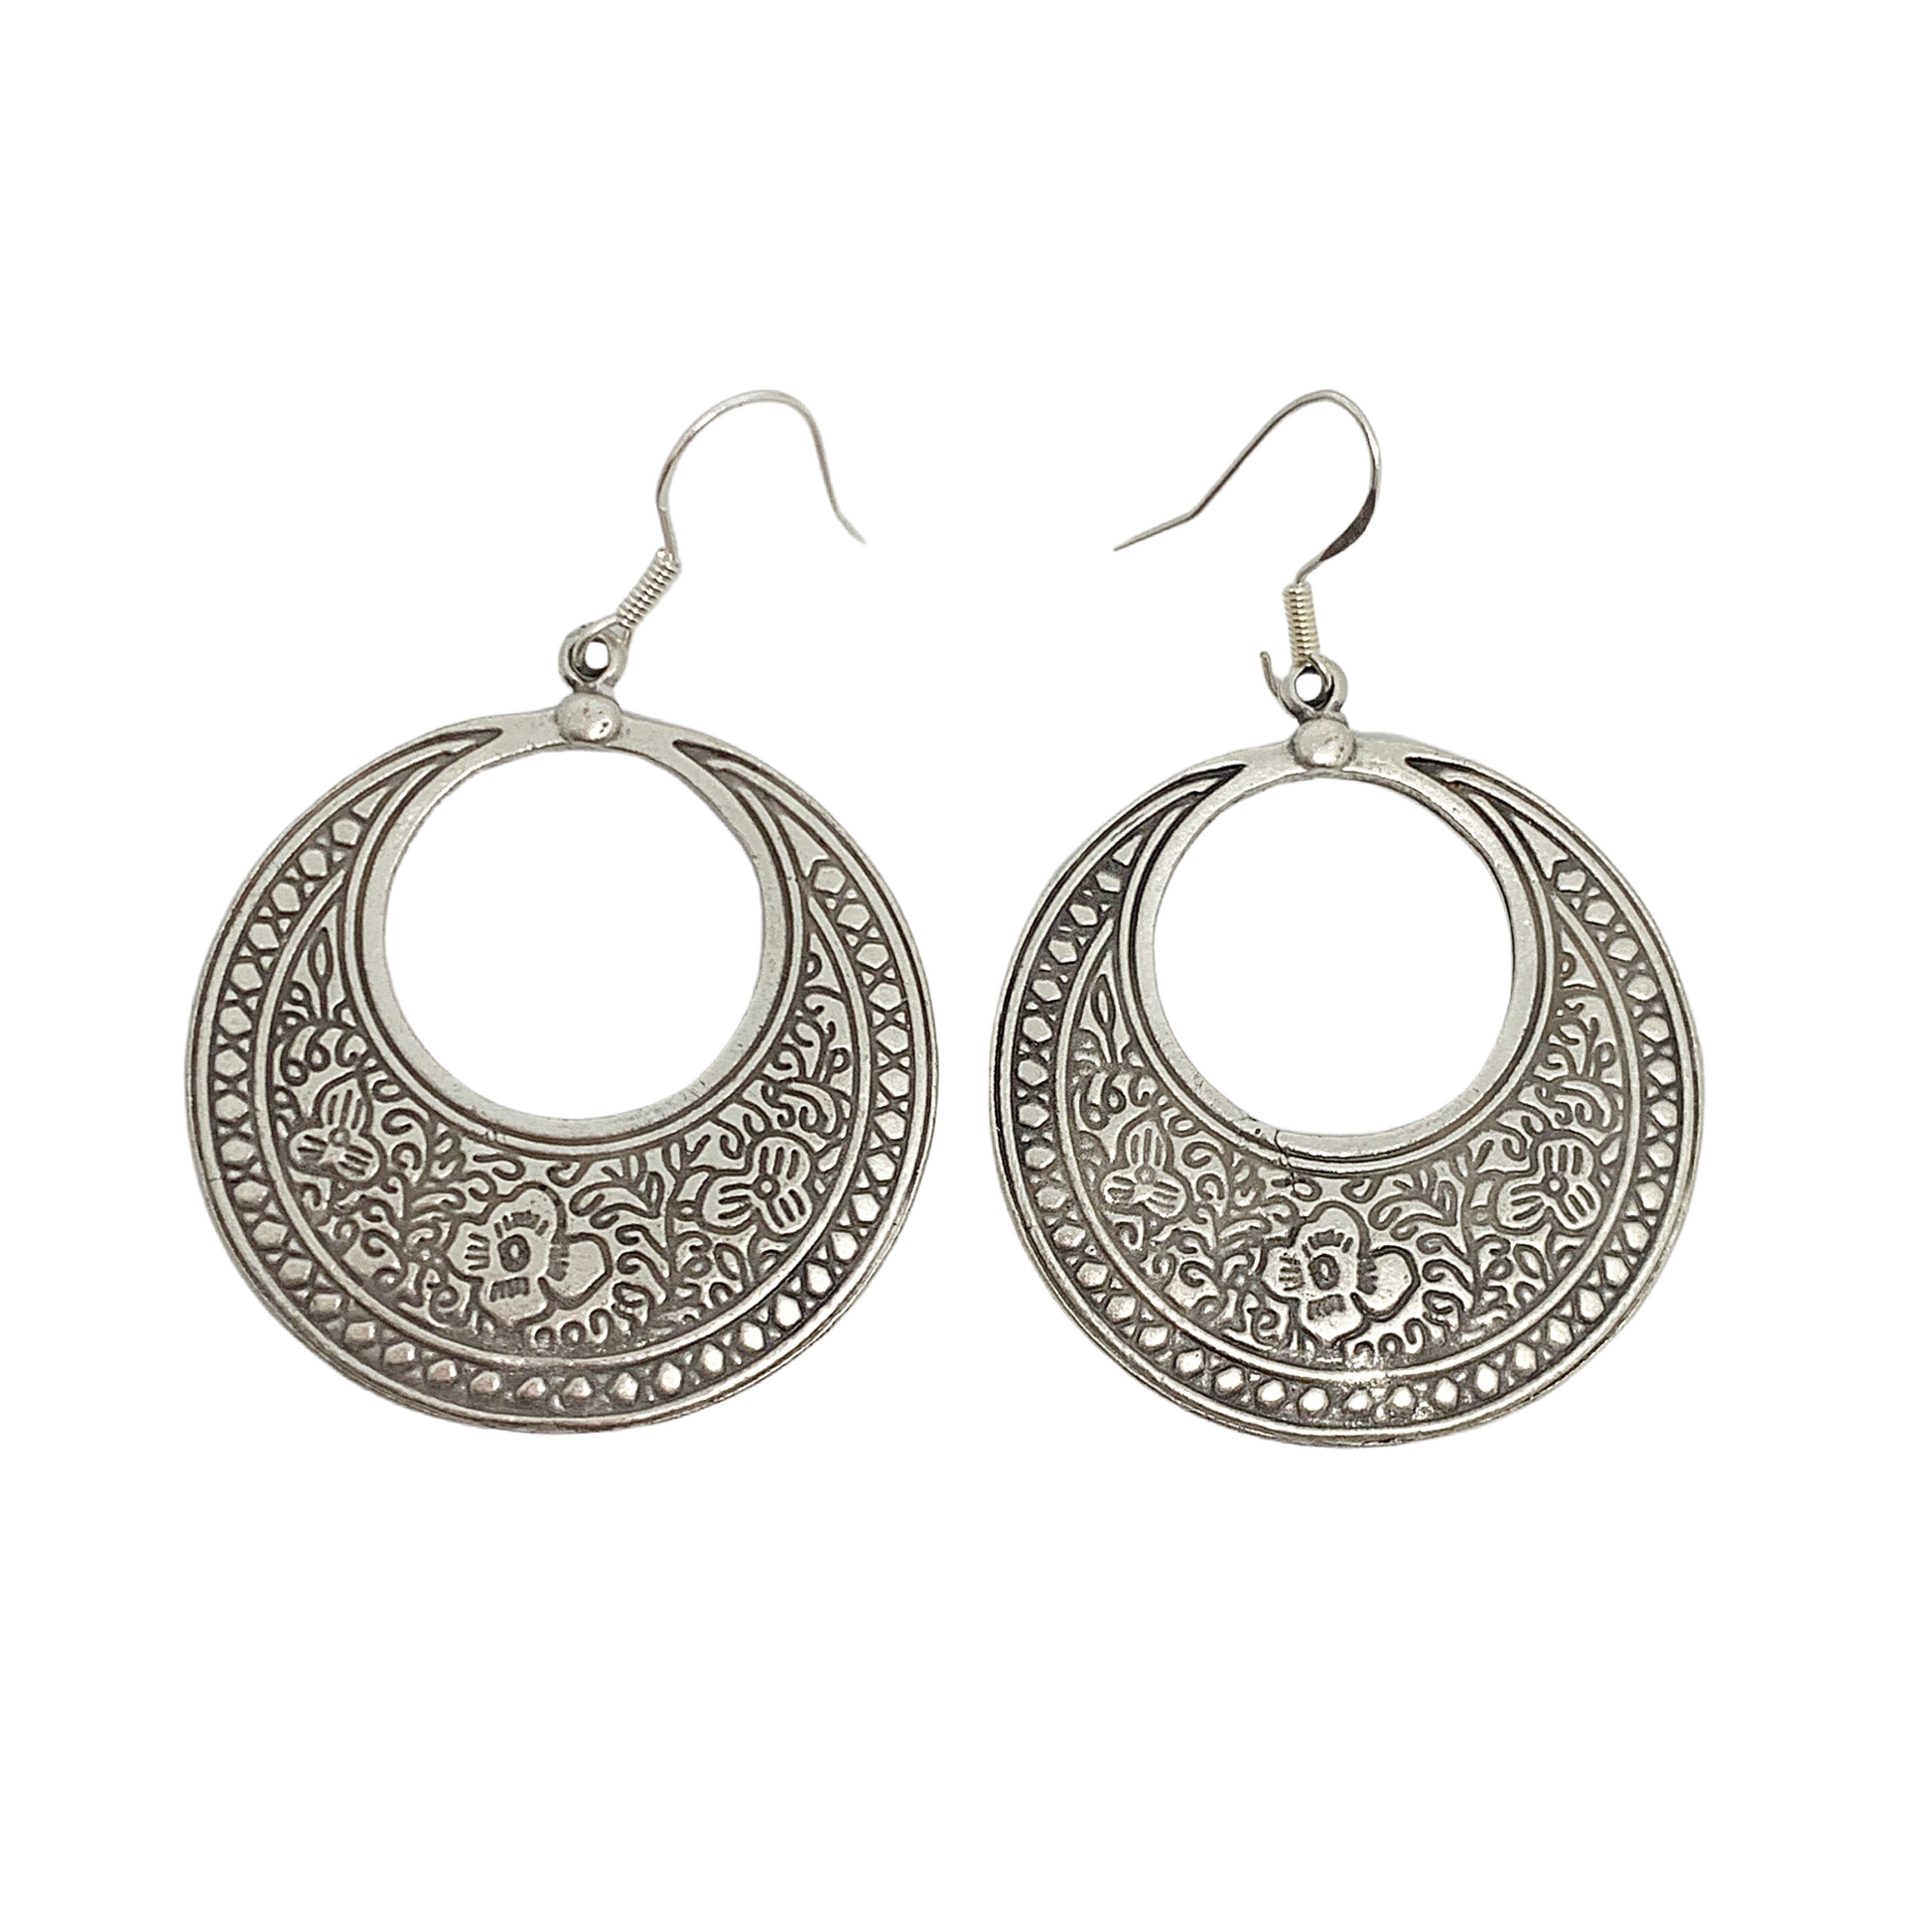 Flower detailed, silver metal hoop style earrings, jewelry - Andria Bieber Designs 